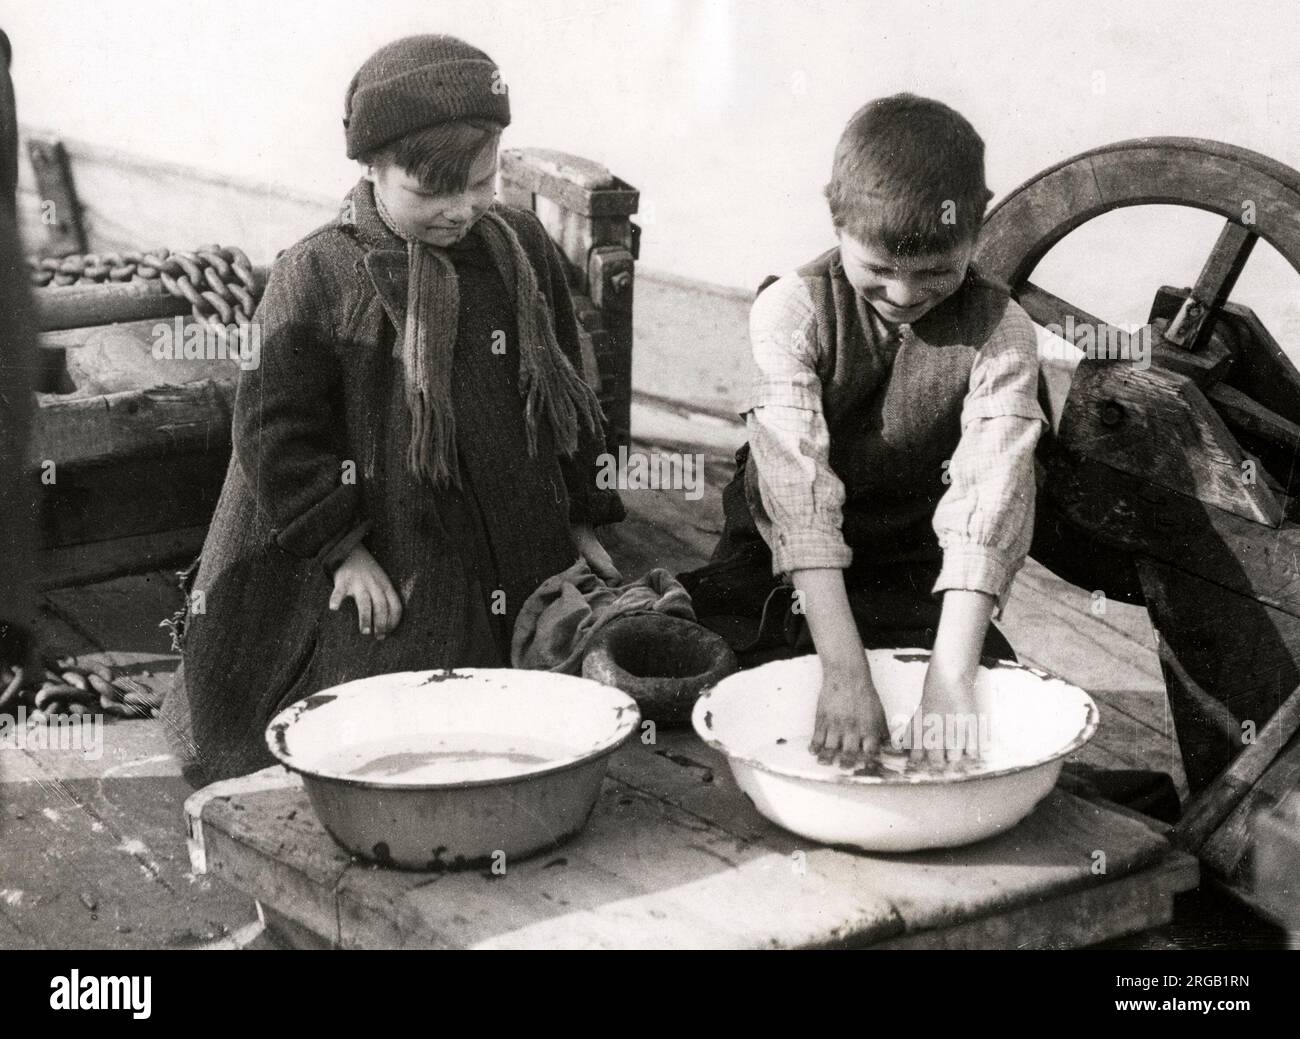 Photo de presse ancienne du début du 20th siècle - vie de famille à bord d'un bateau, histoire sociale, pauvreté, Angleterre, 1920s - les enfants se lavant dans un bol Banque D'Images